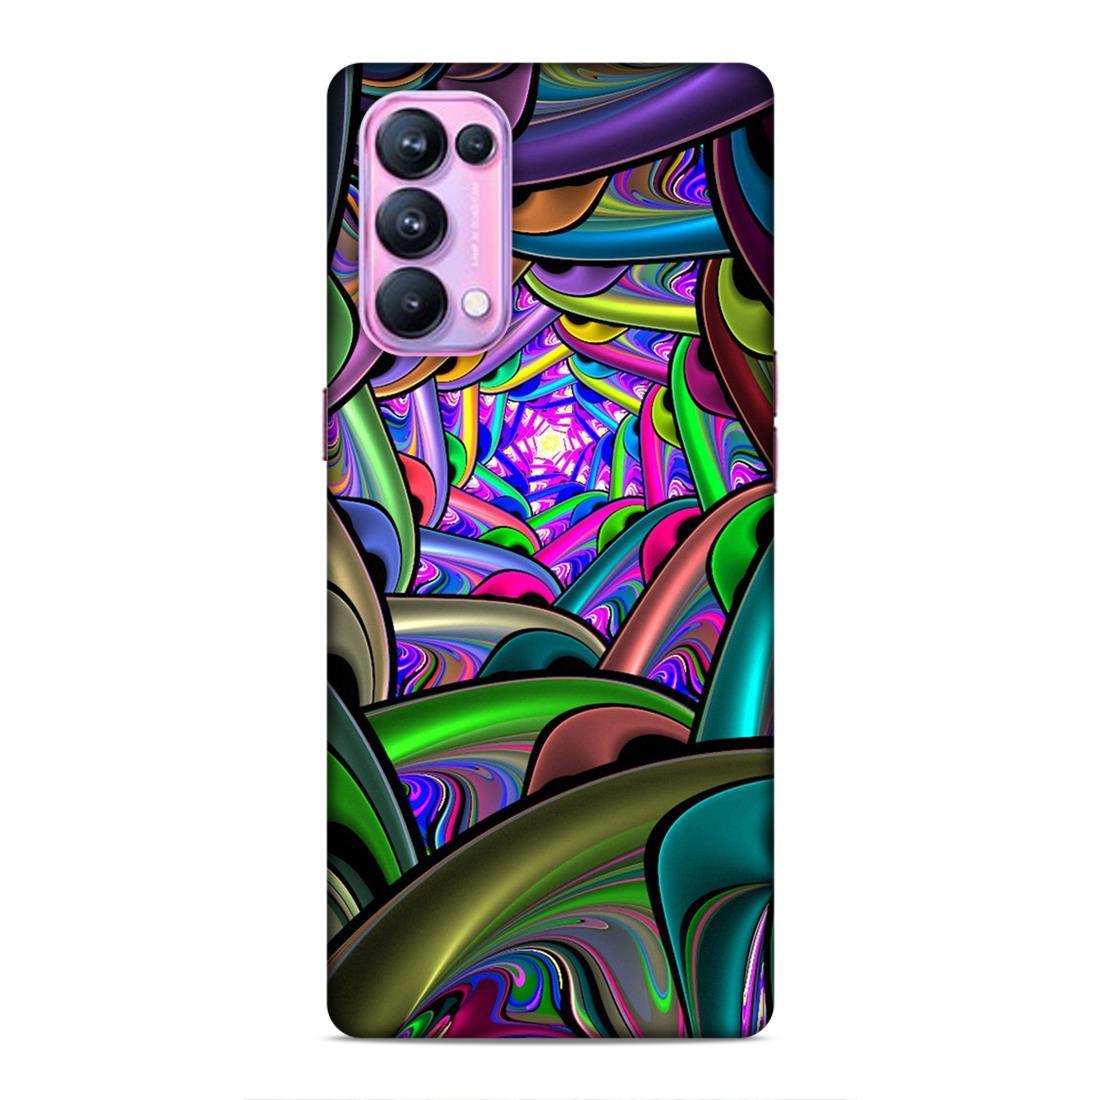 Deep Multicolour Oppo Reno 5 Pro Mobile Cover